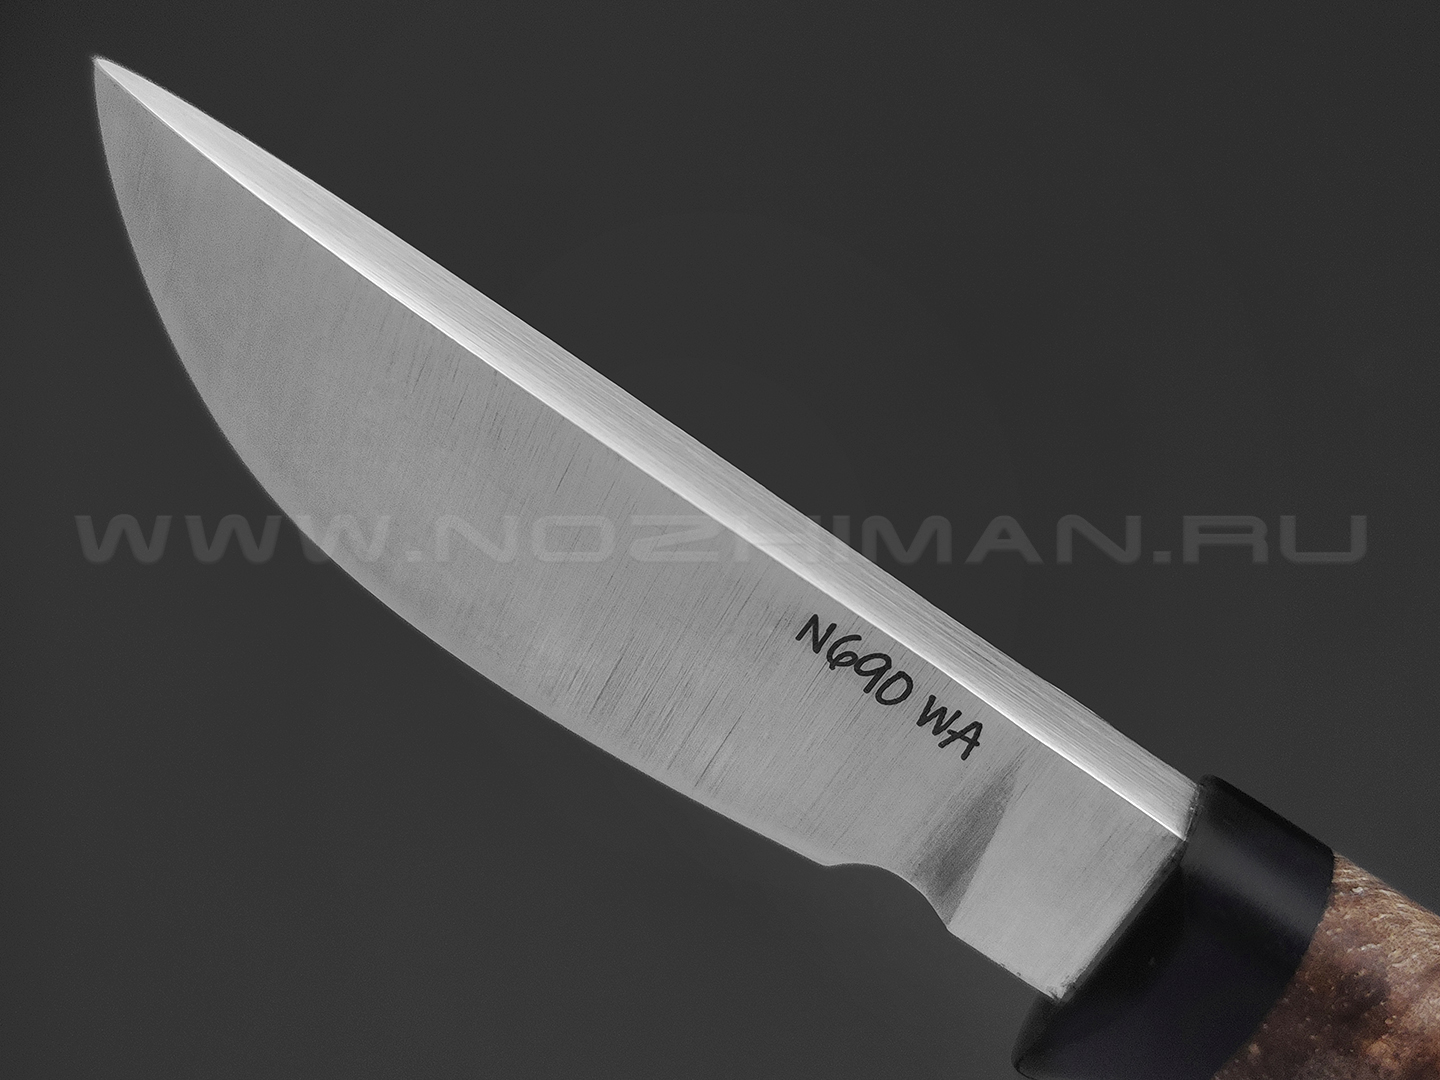 Волчий Век нож Слоненок Custom сталь N690 WA satin, рукоять Кап клена, G10